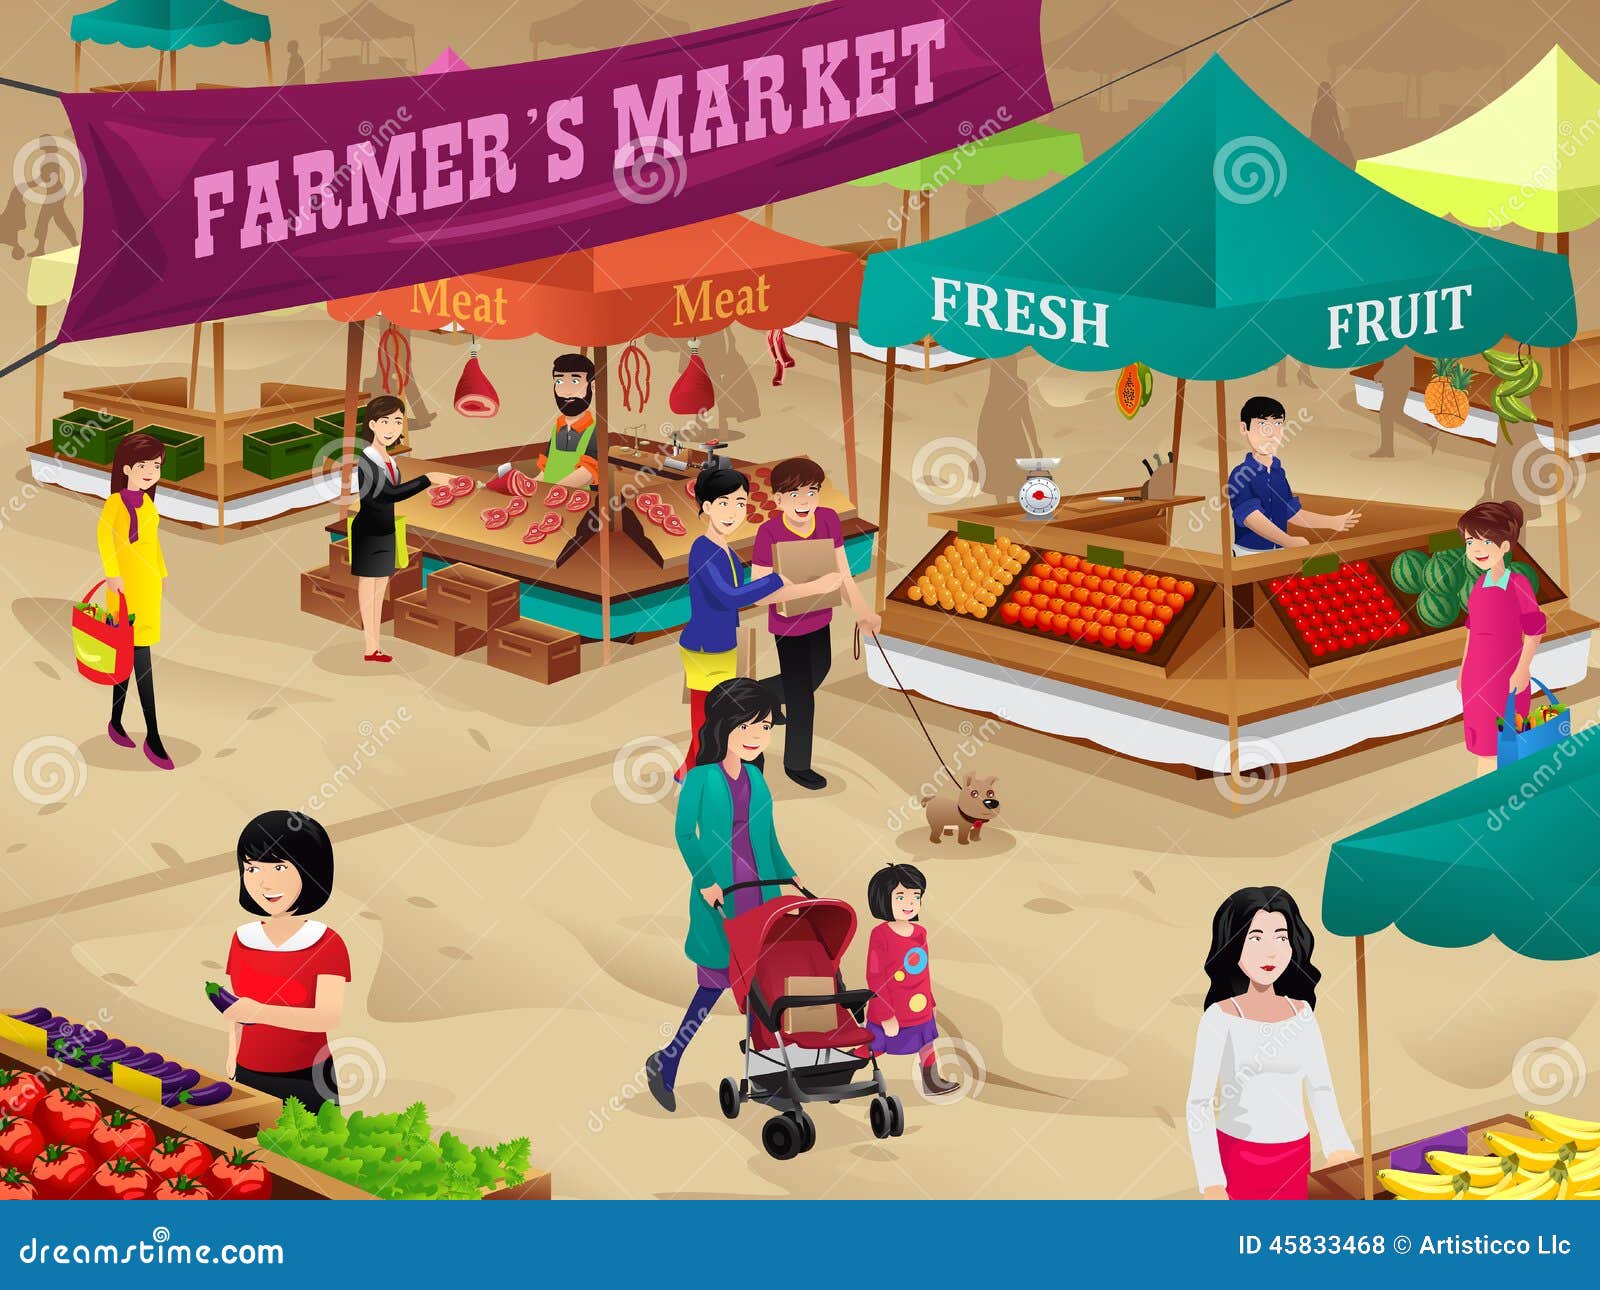 It Looks Like Boston Is Finally Getting A Public Food Market | WBUR News